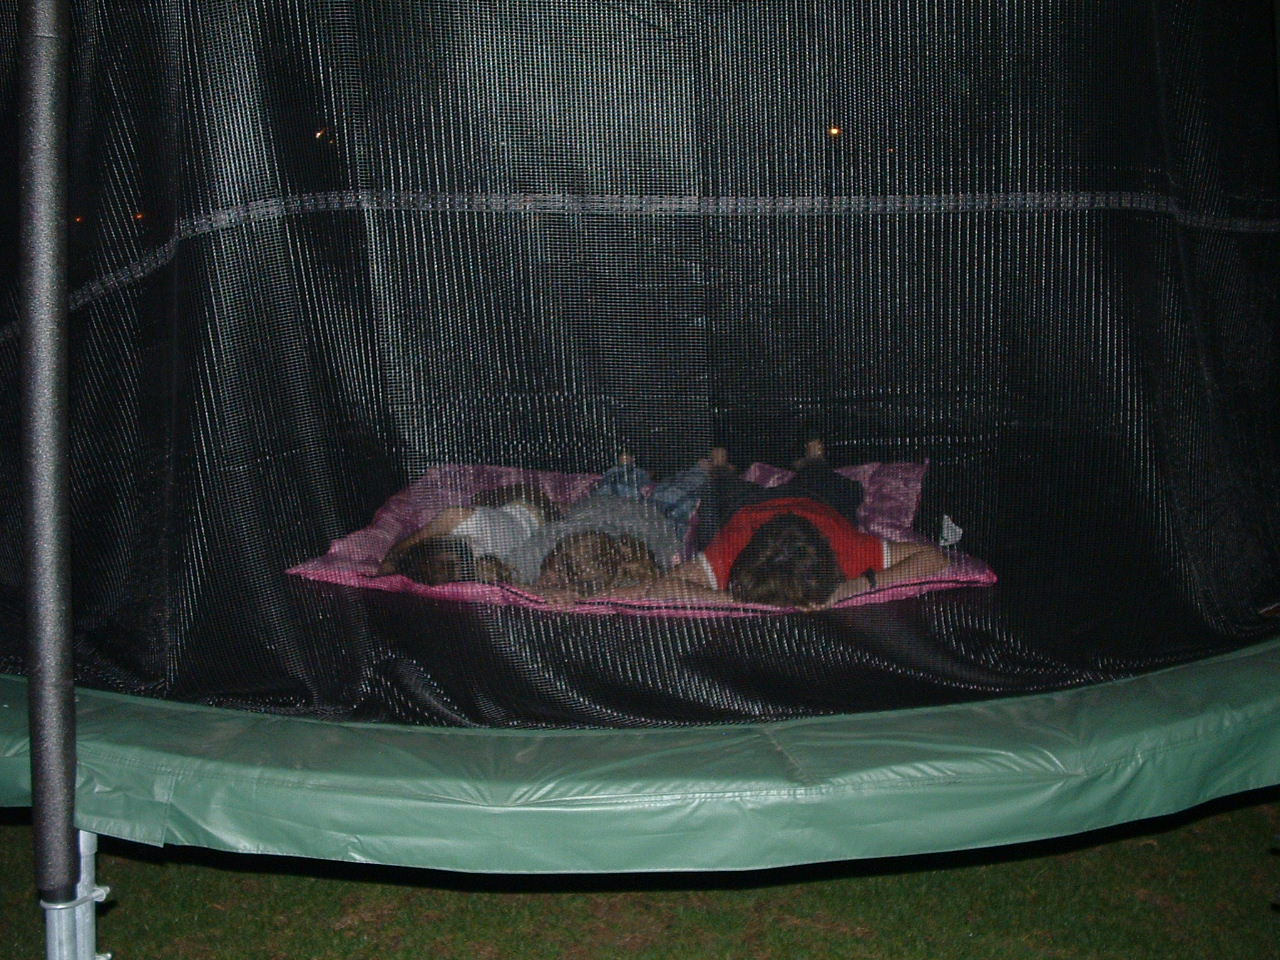 [sleeping+on+the+trampoline.jpg]